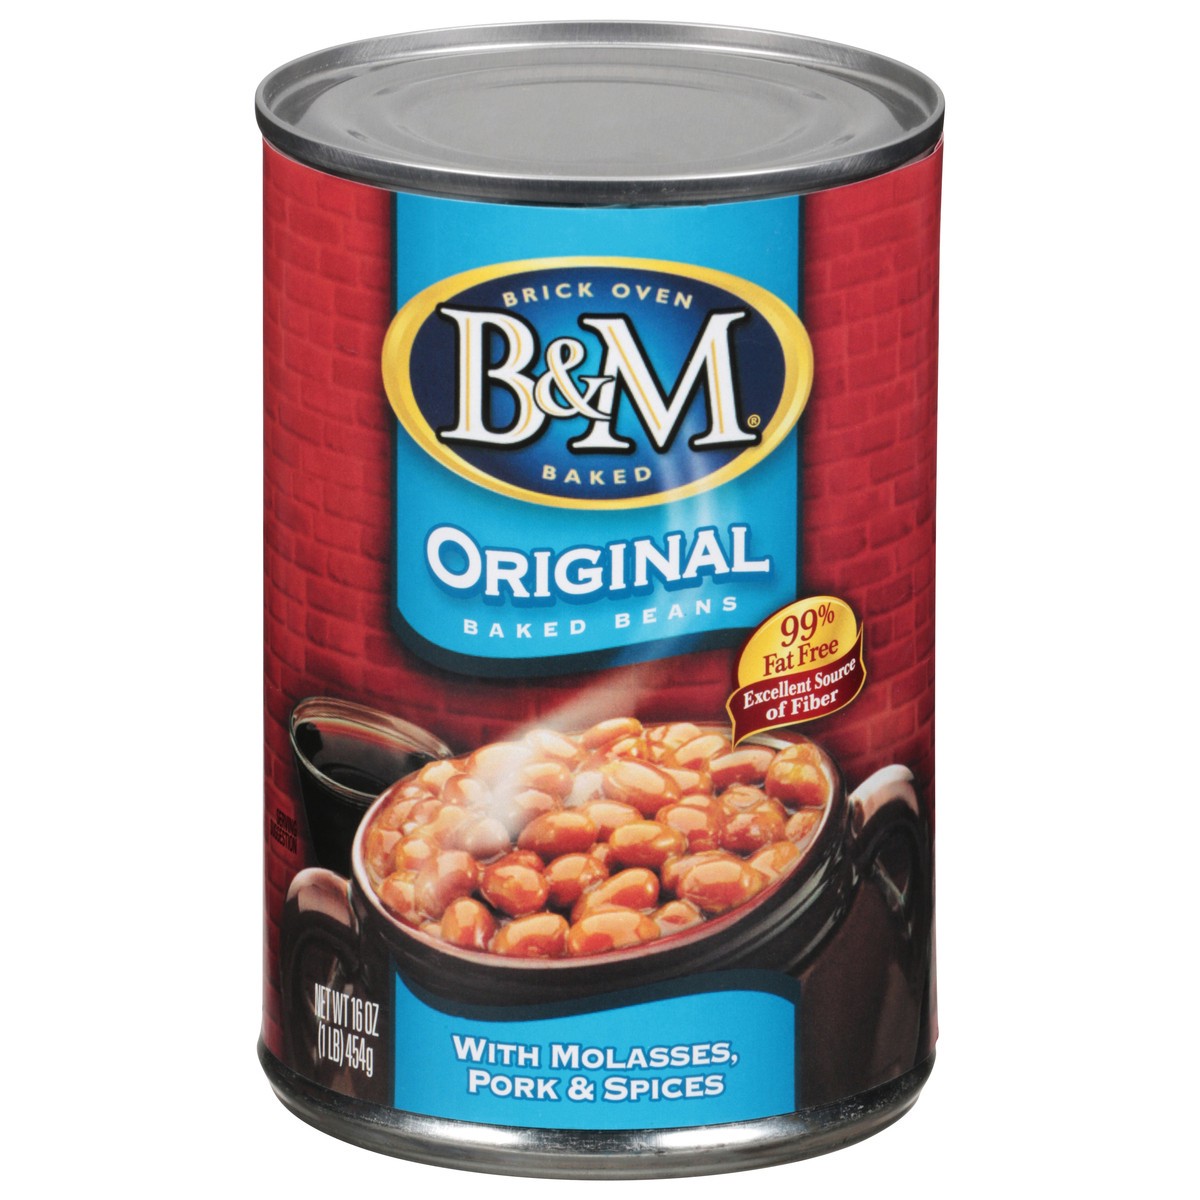 slide 1 of 7, B&M Original Baked Beans, 16 oz